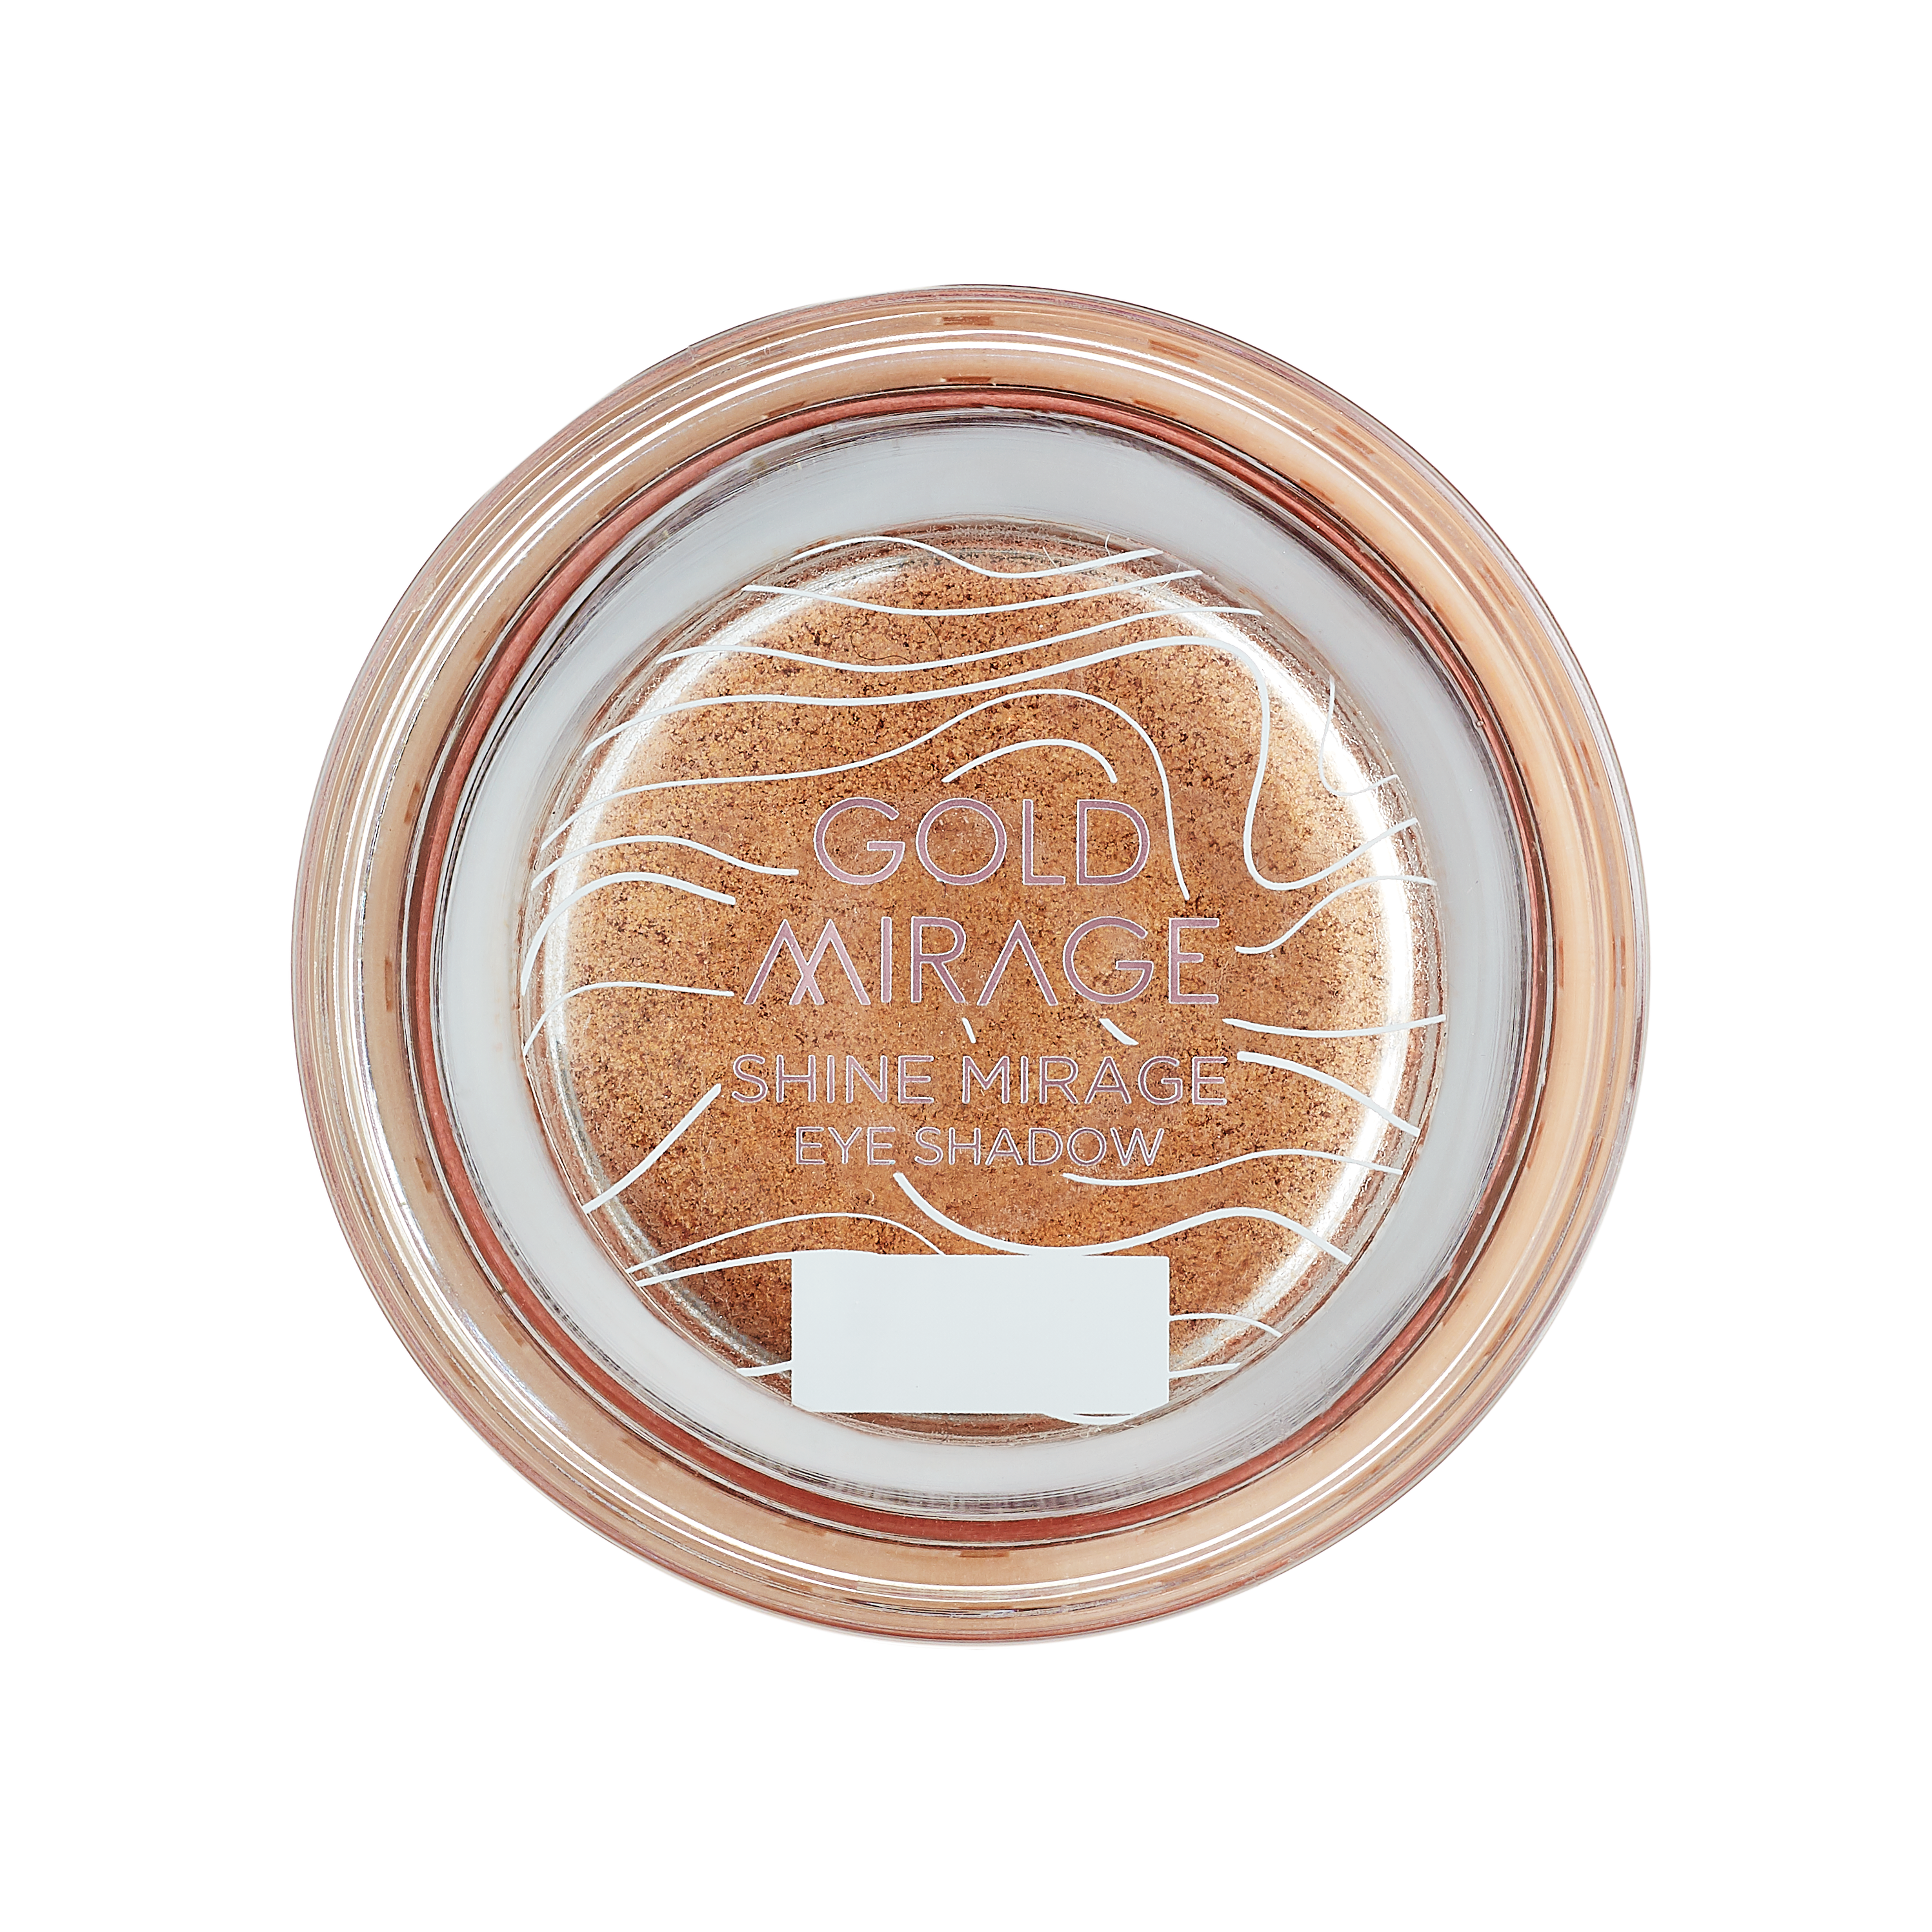 L'Oréal Gold Mirage Limited Edition Collectie - Shine Mirage Eye Schadow 04 Tiger Eye - Goudkleurige Oogschaduw